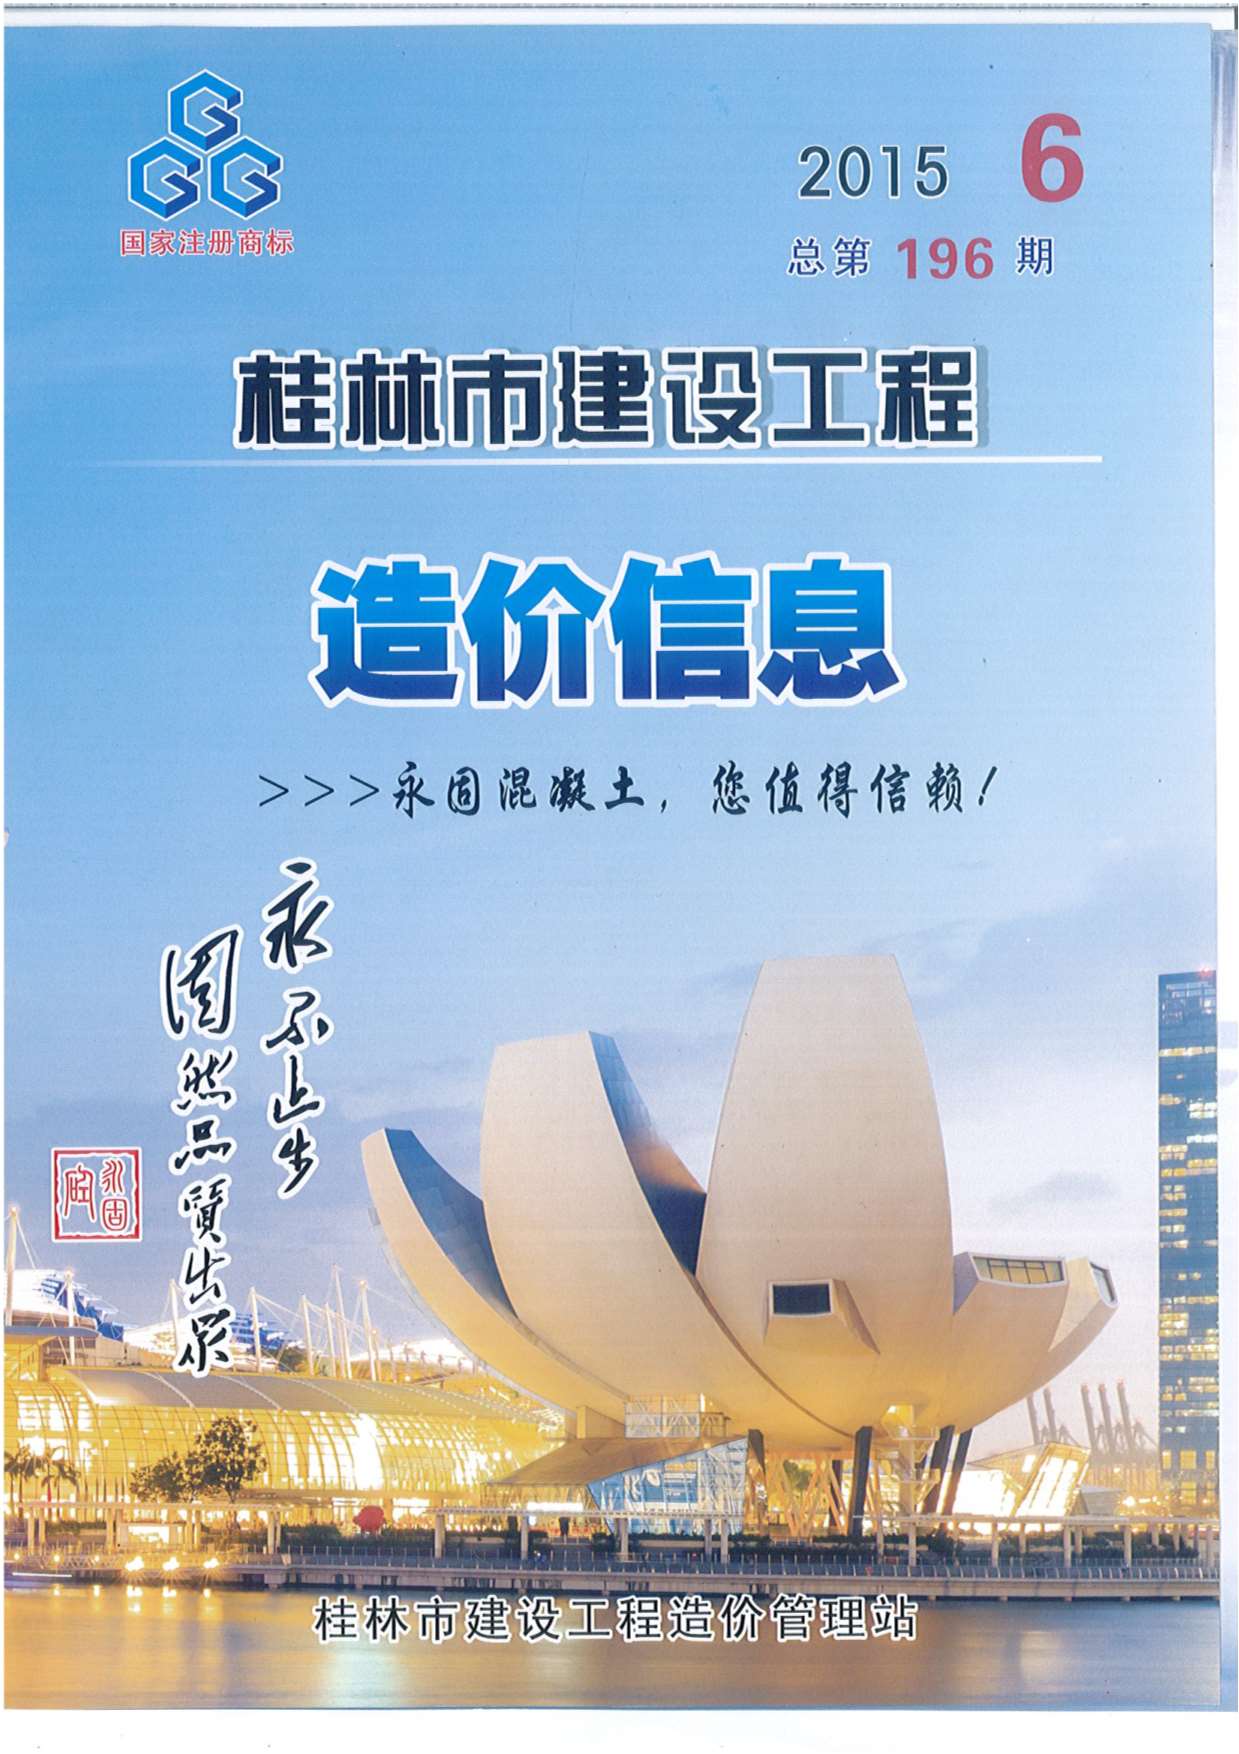 桂林市2015年6月建设工程造价信息